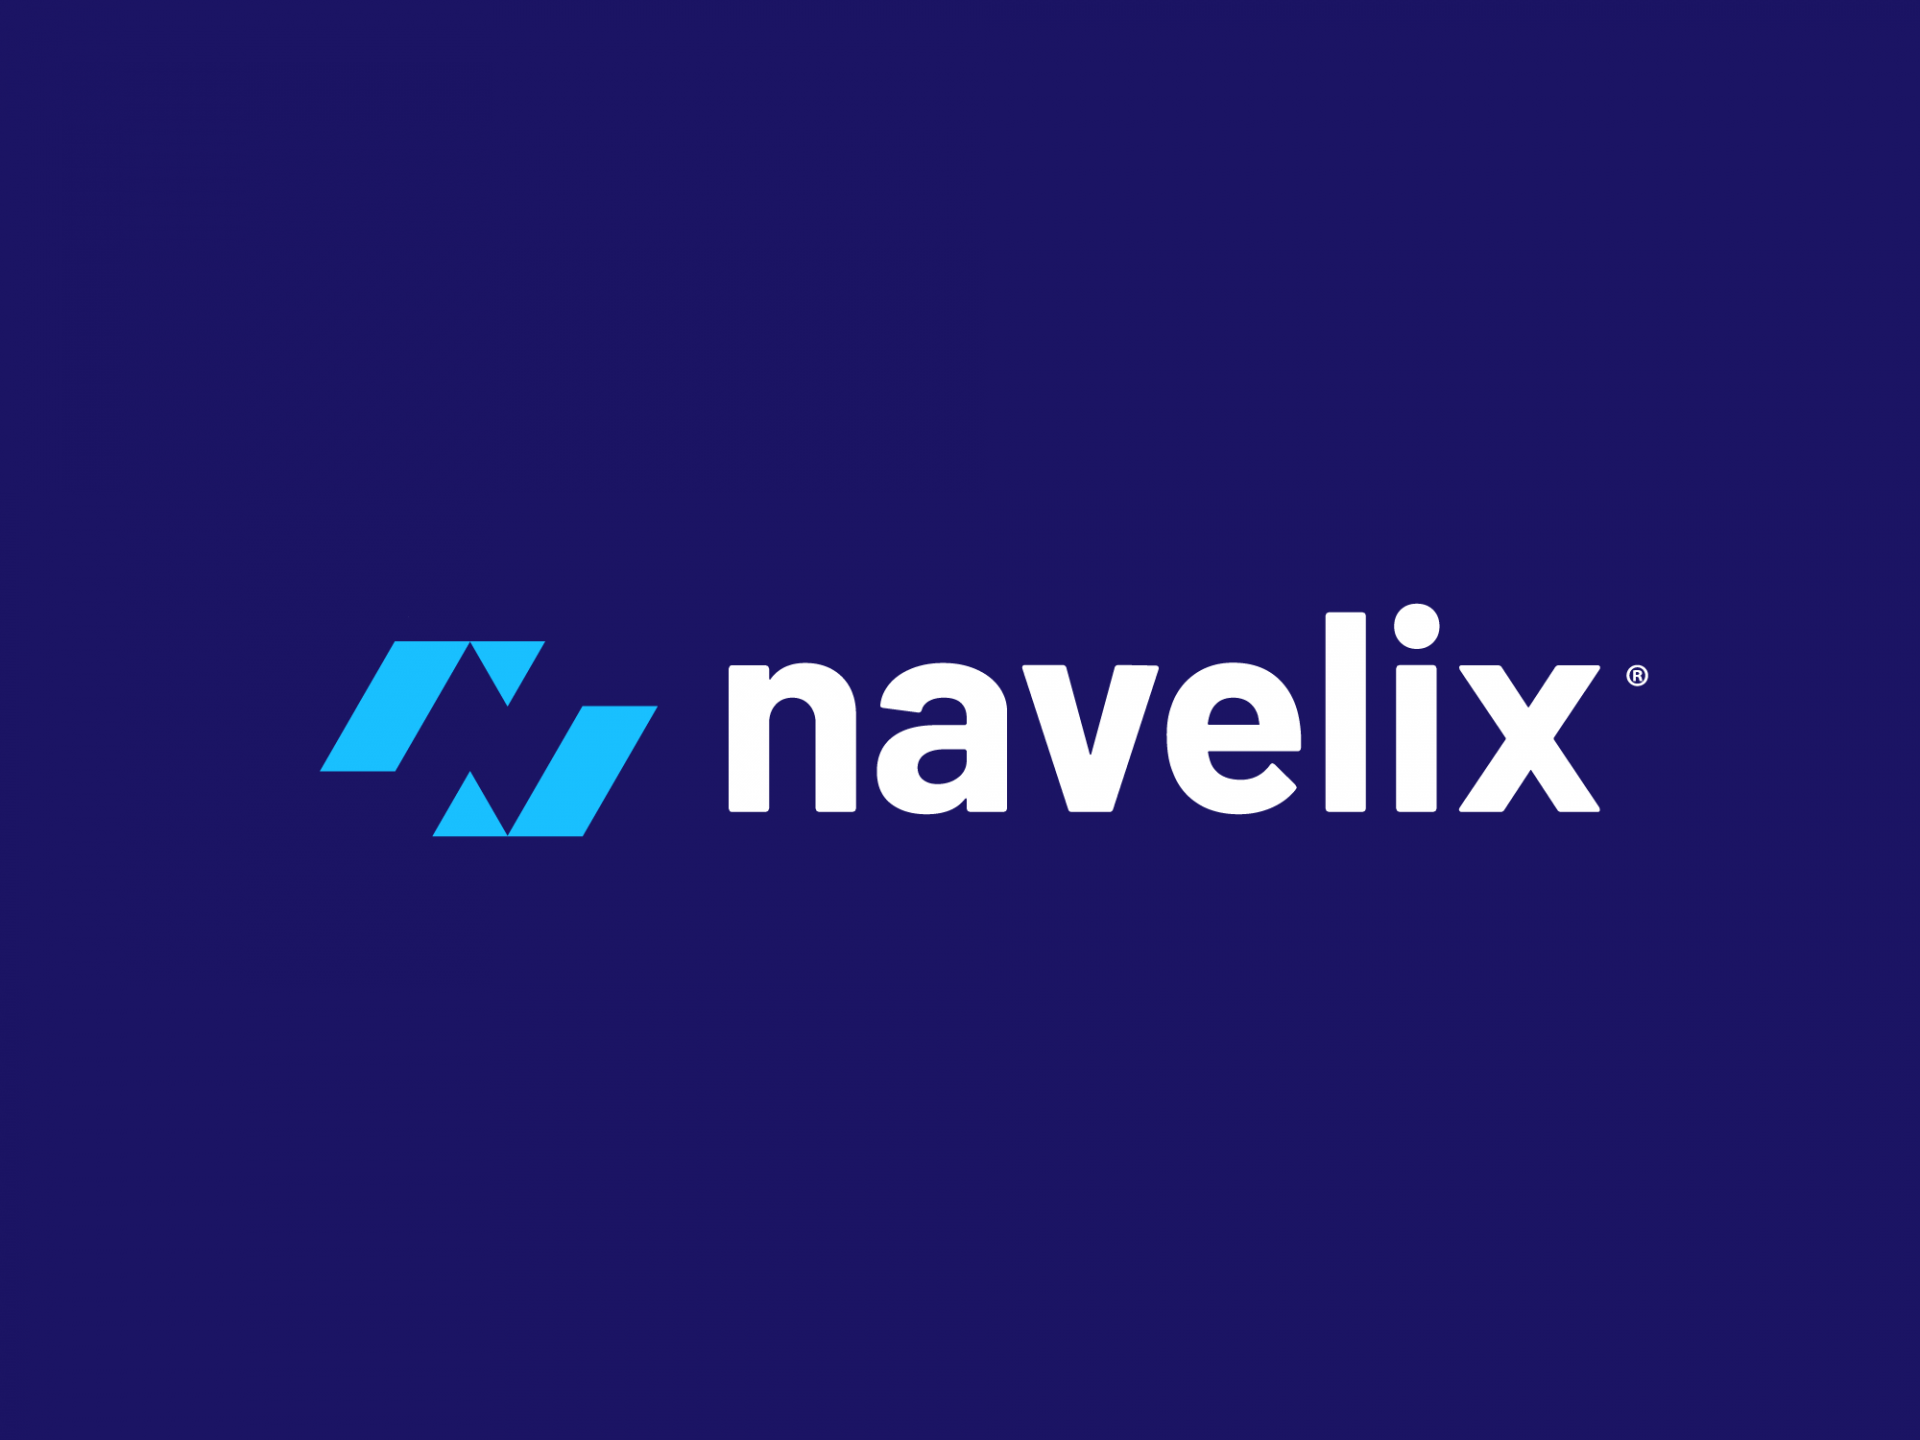 Diseño de logo Navelix